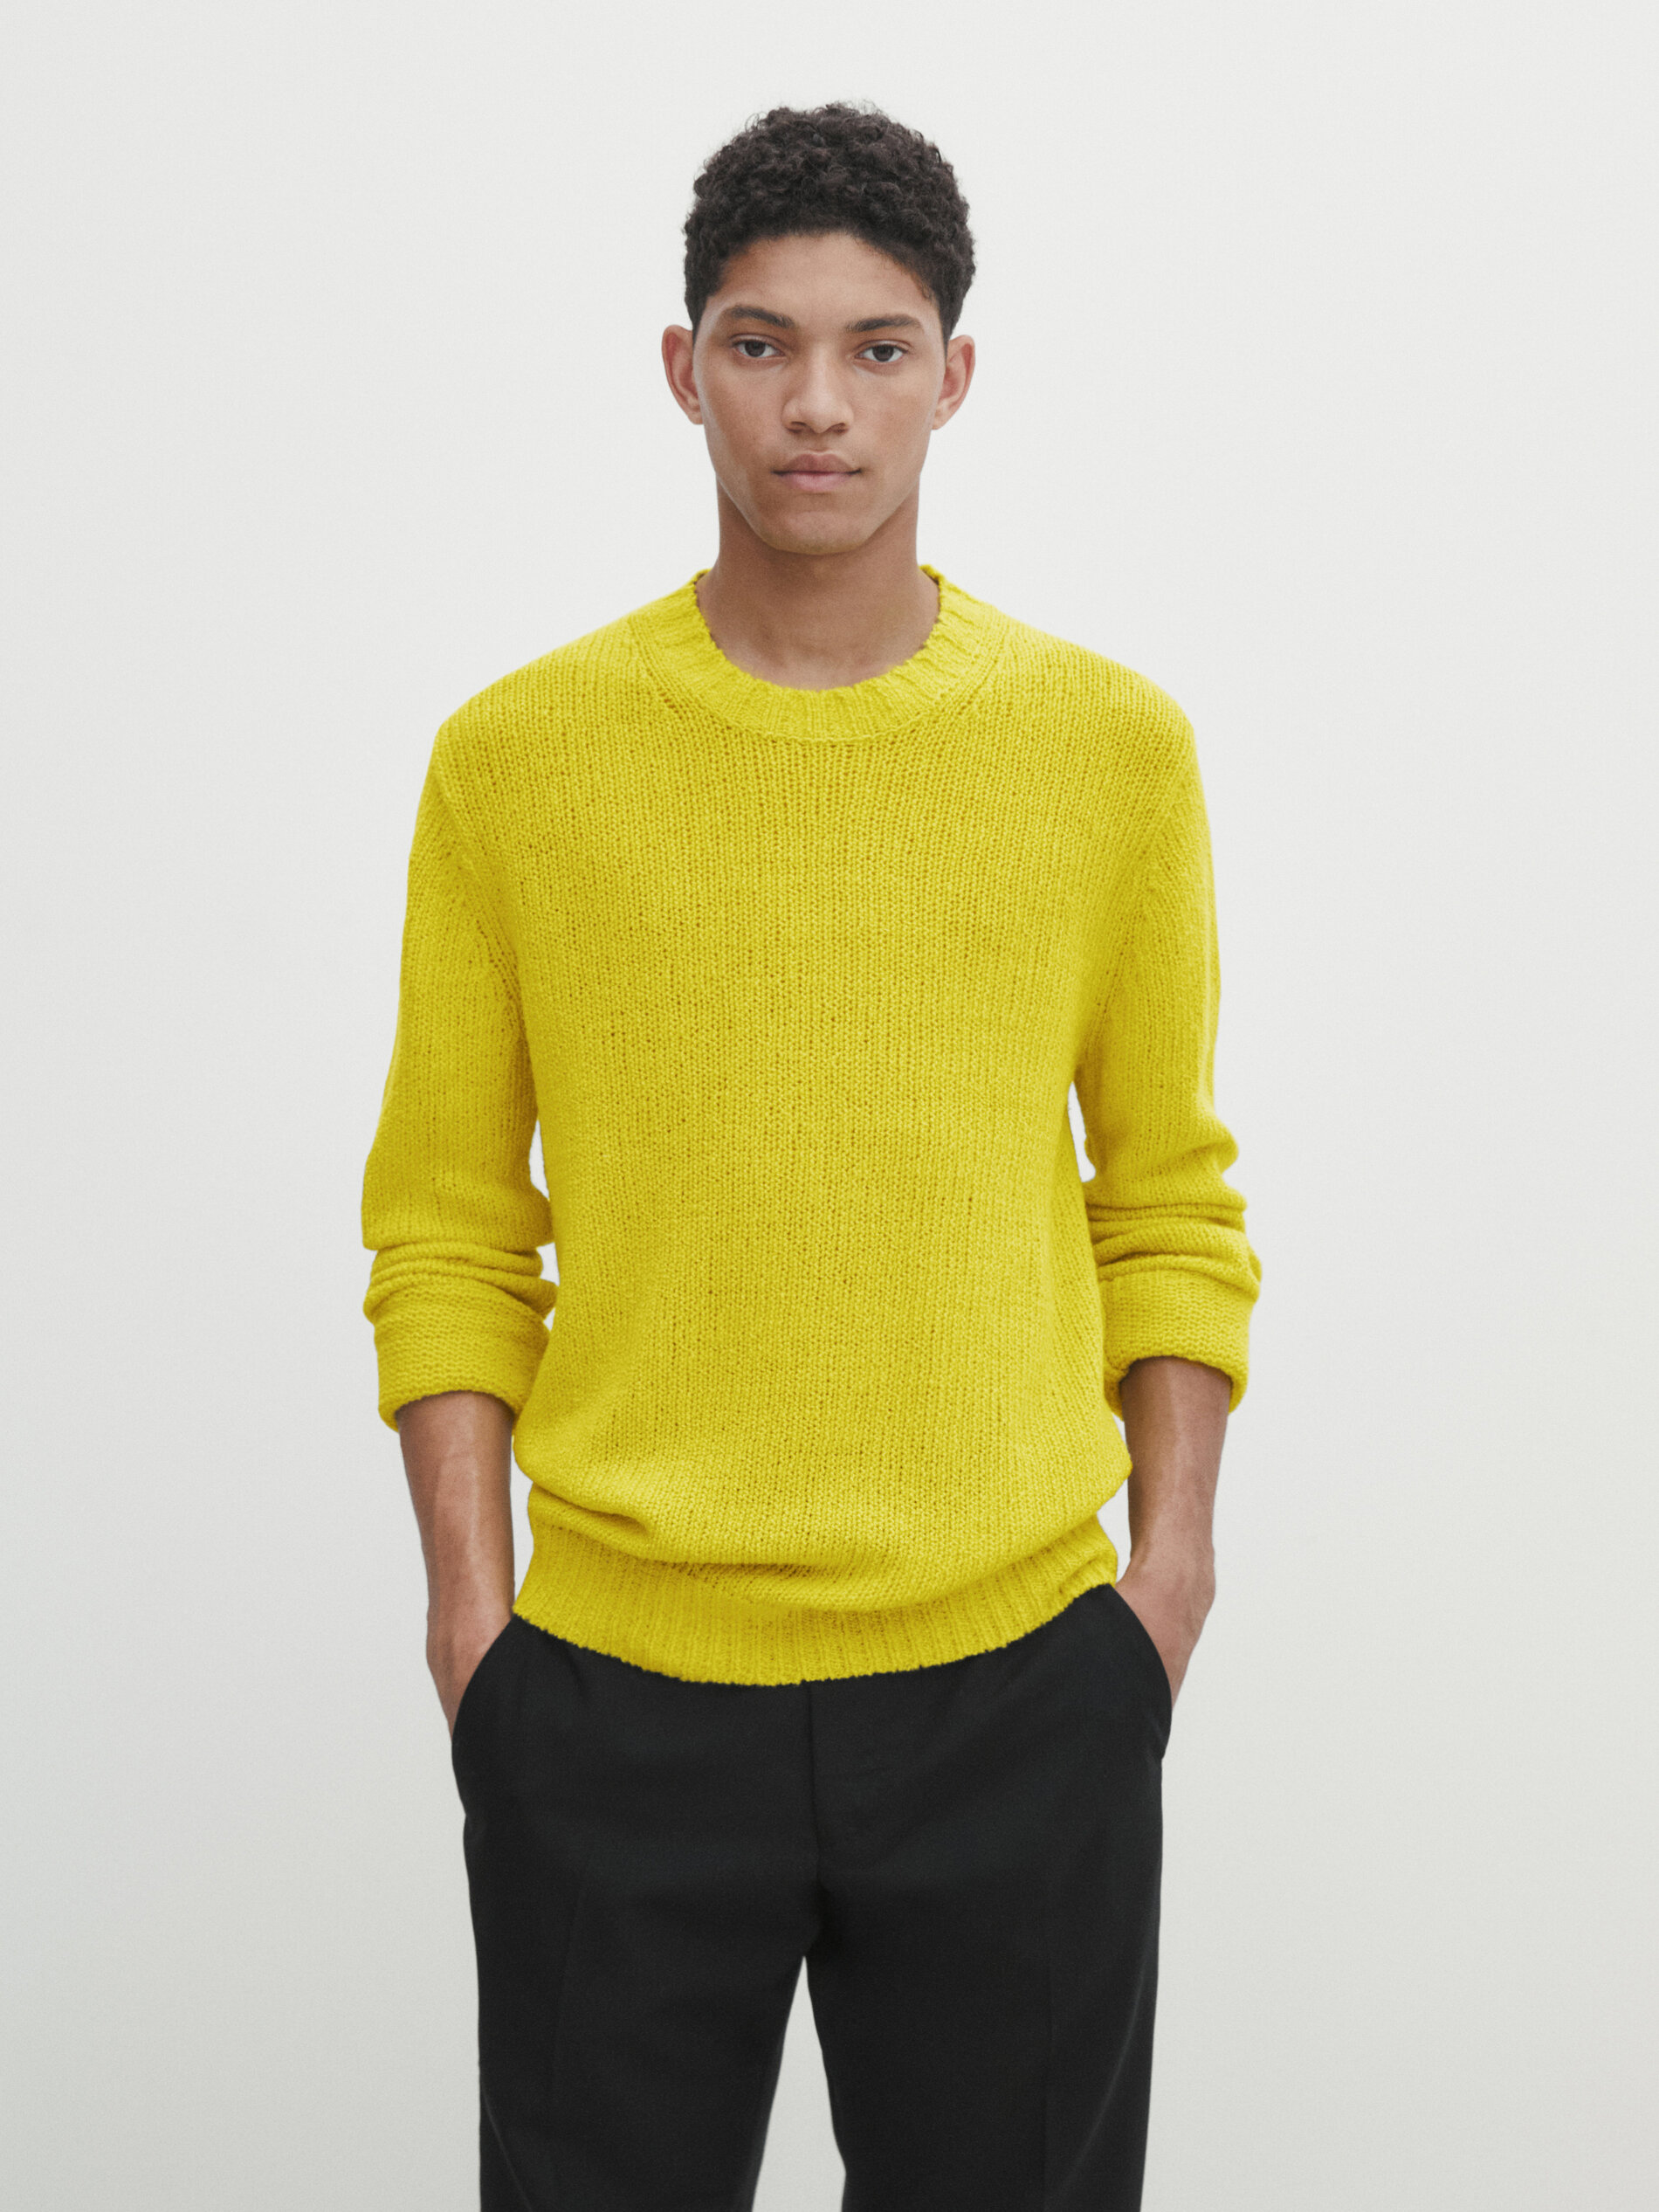 Wool blend lettuce edge knit sweater · Lemon Yellow, Ocean